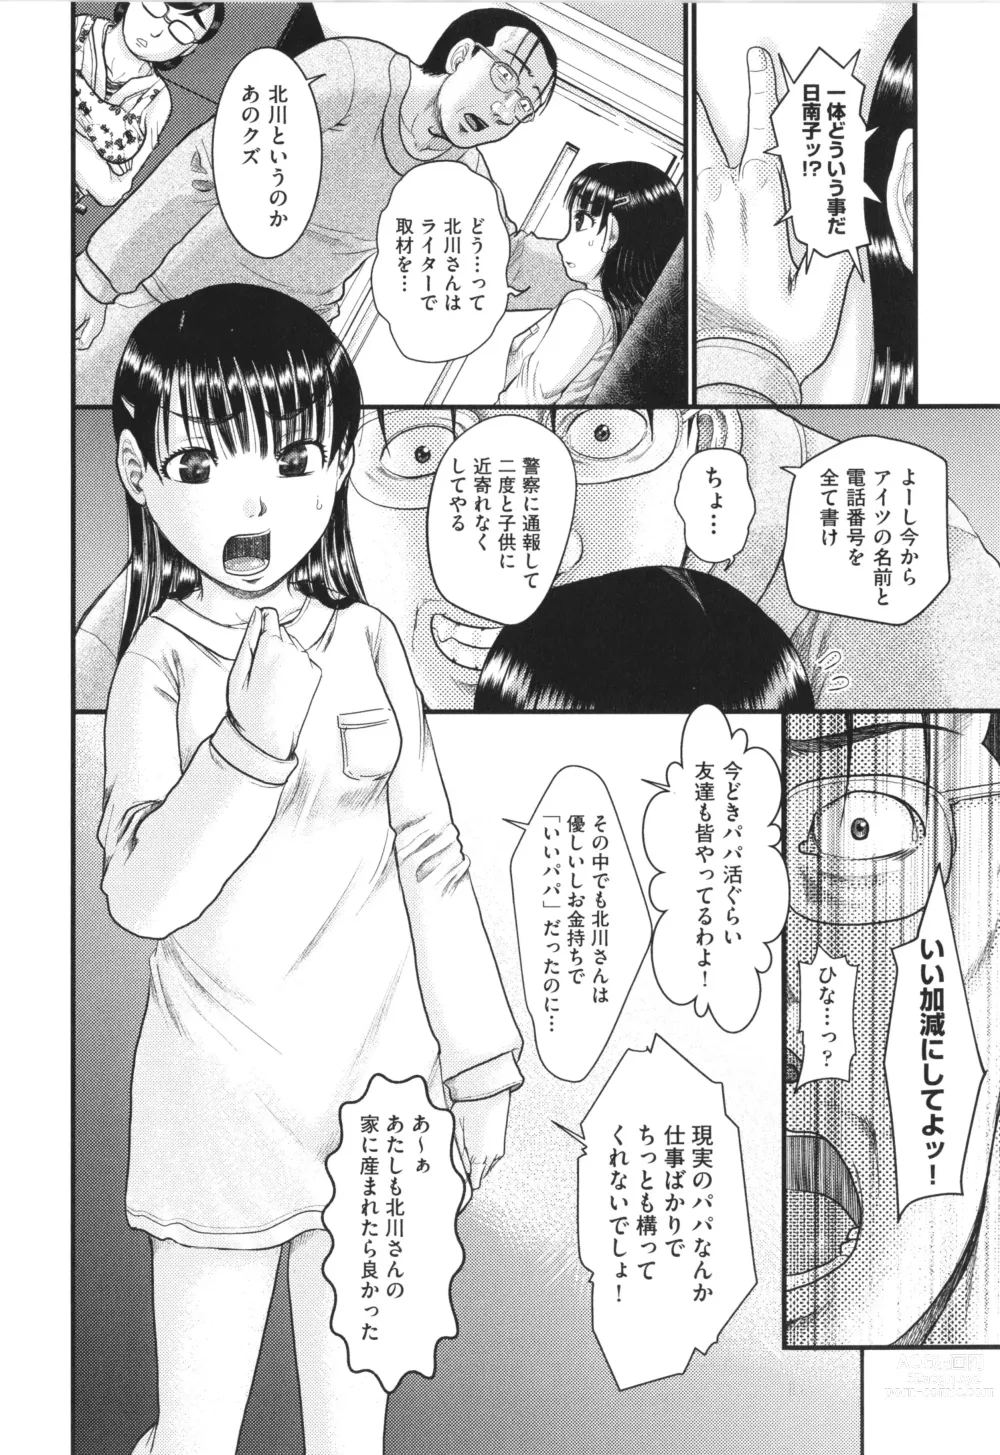 Page 7 of manga Akarui Kazoku Kyoujoku